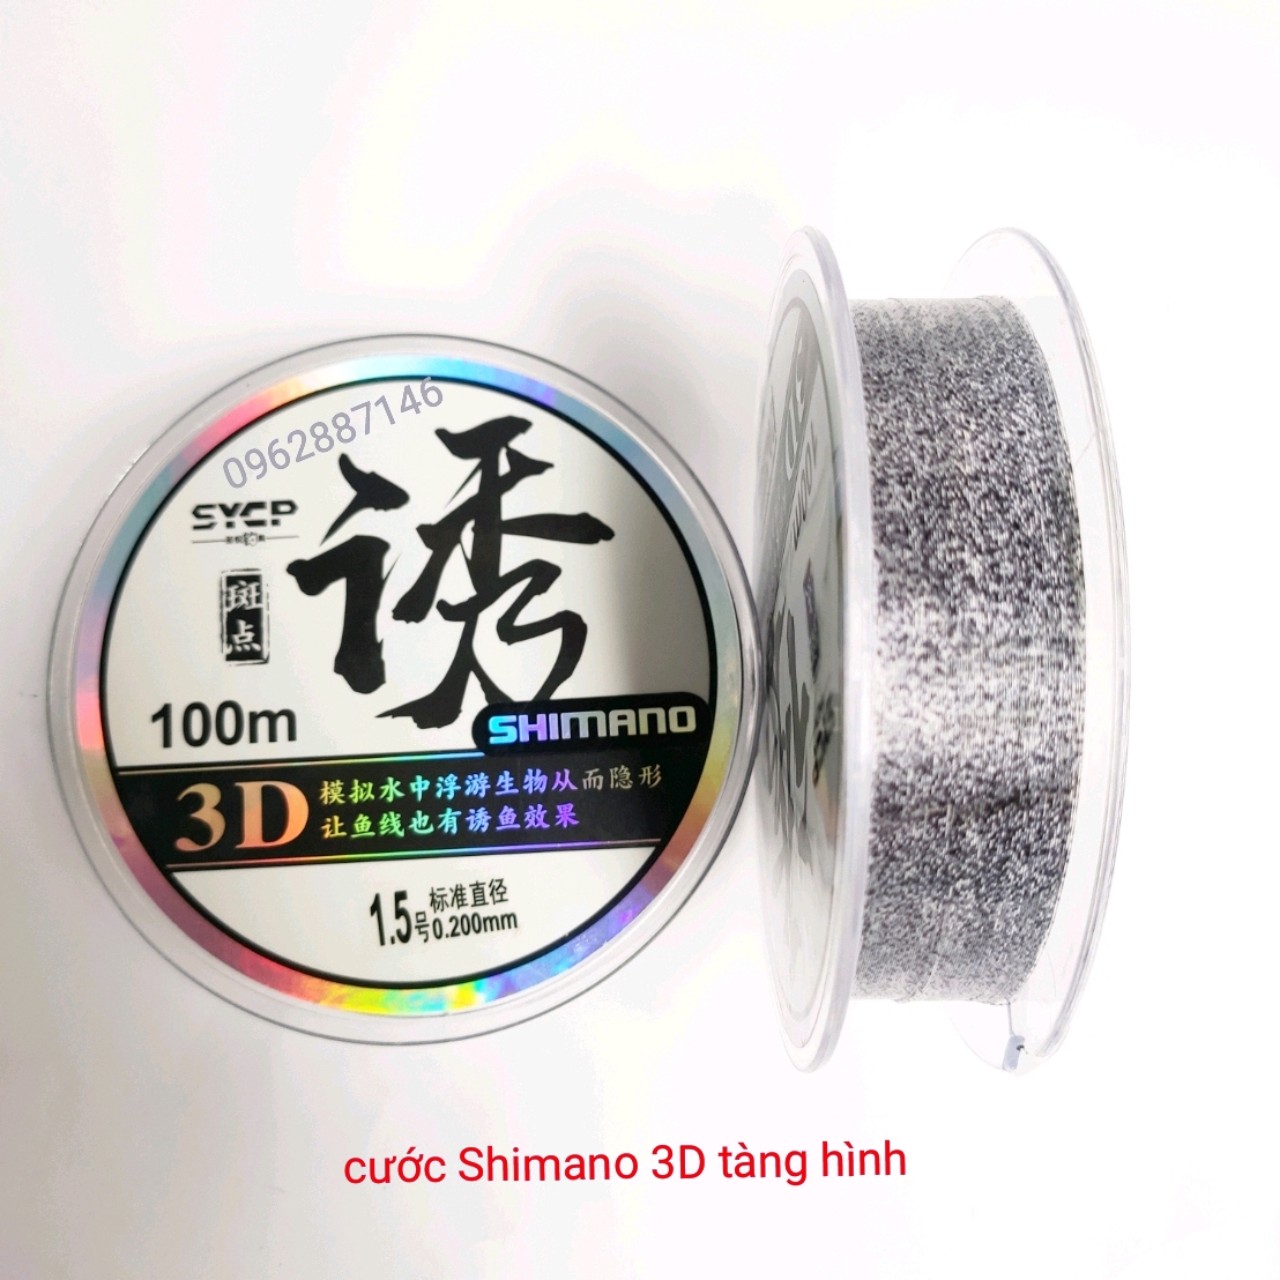 cước câu cá cước thẻo trục shimano 3D tàng hình 100m nano